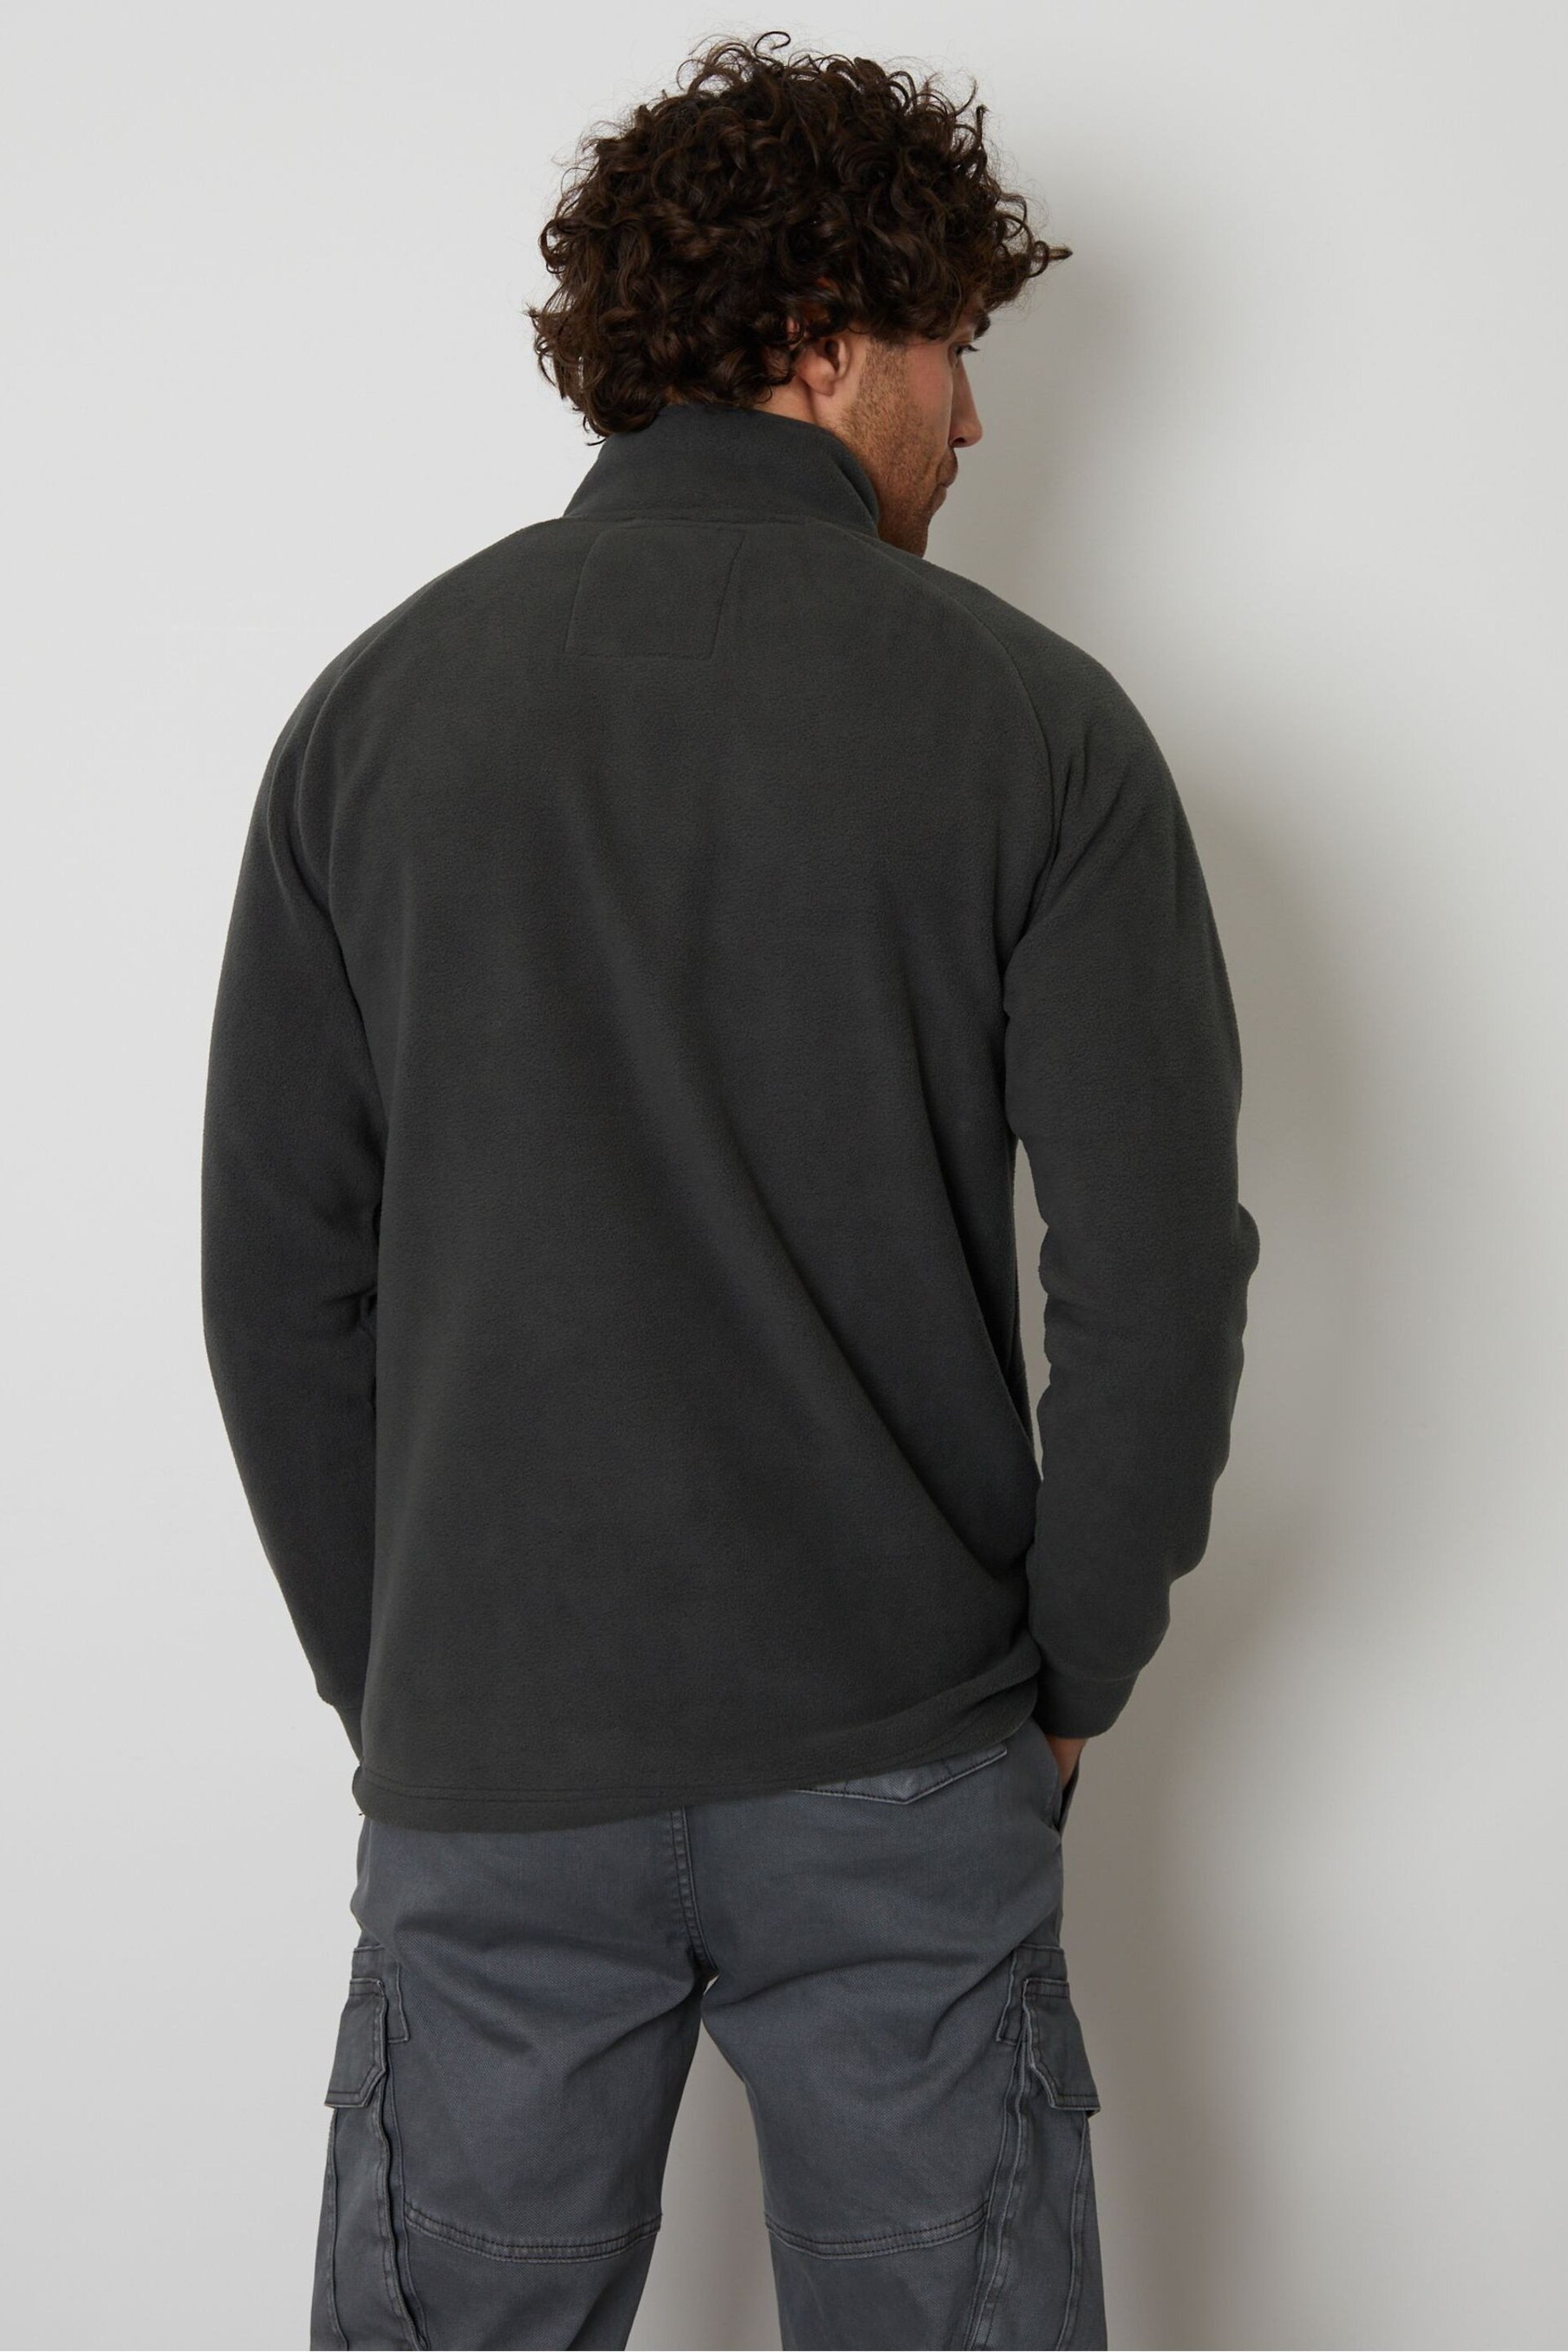 Threadbare Grey Zip Up Microfleece Jacket - Image 2 of 4